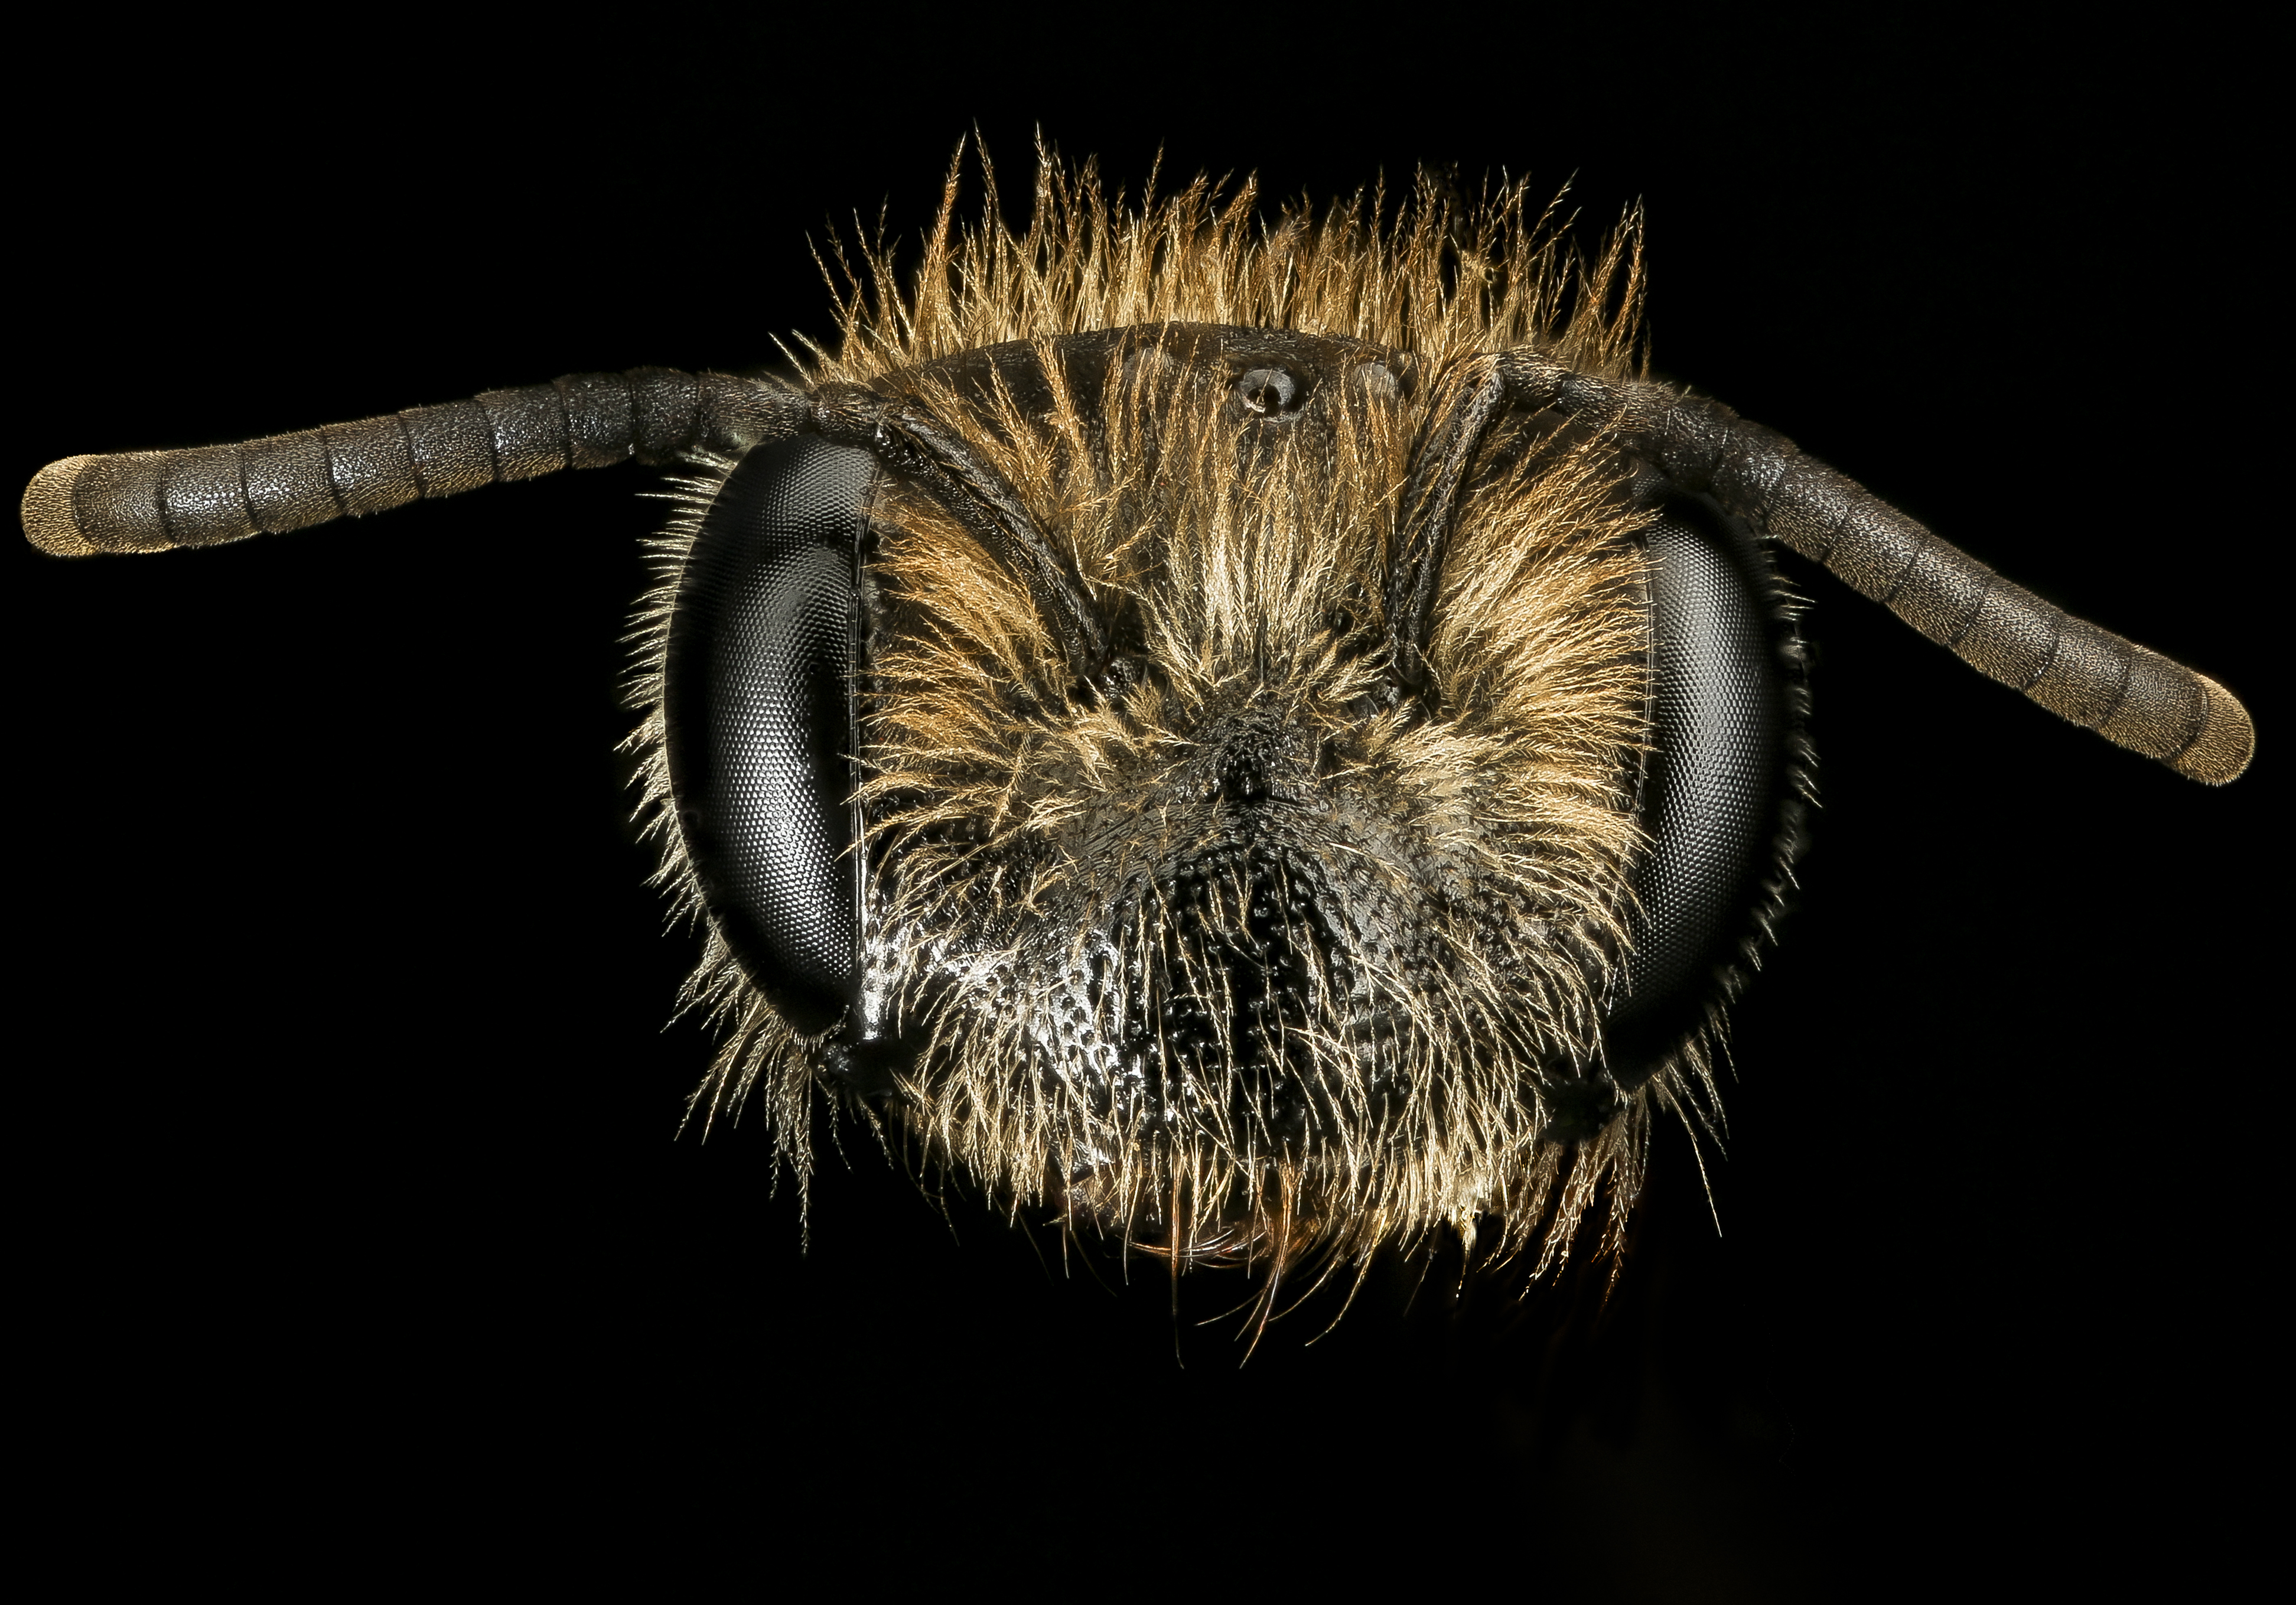 Andrena fenningeri, f, face, Pr. George's Co. MD 2016-10-20-13.55 (29855585583)